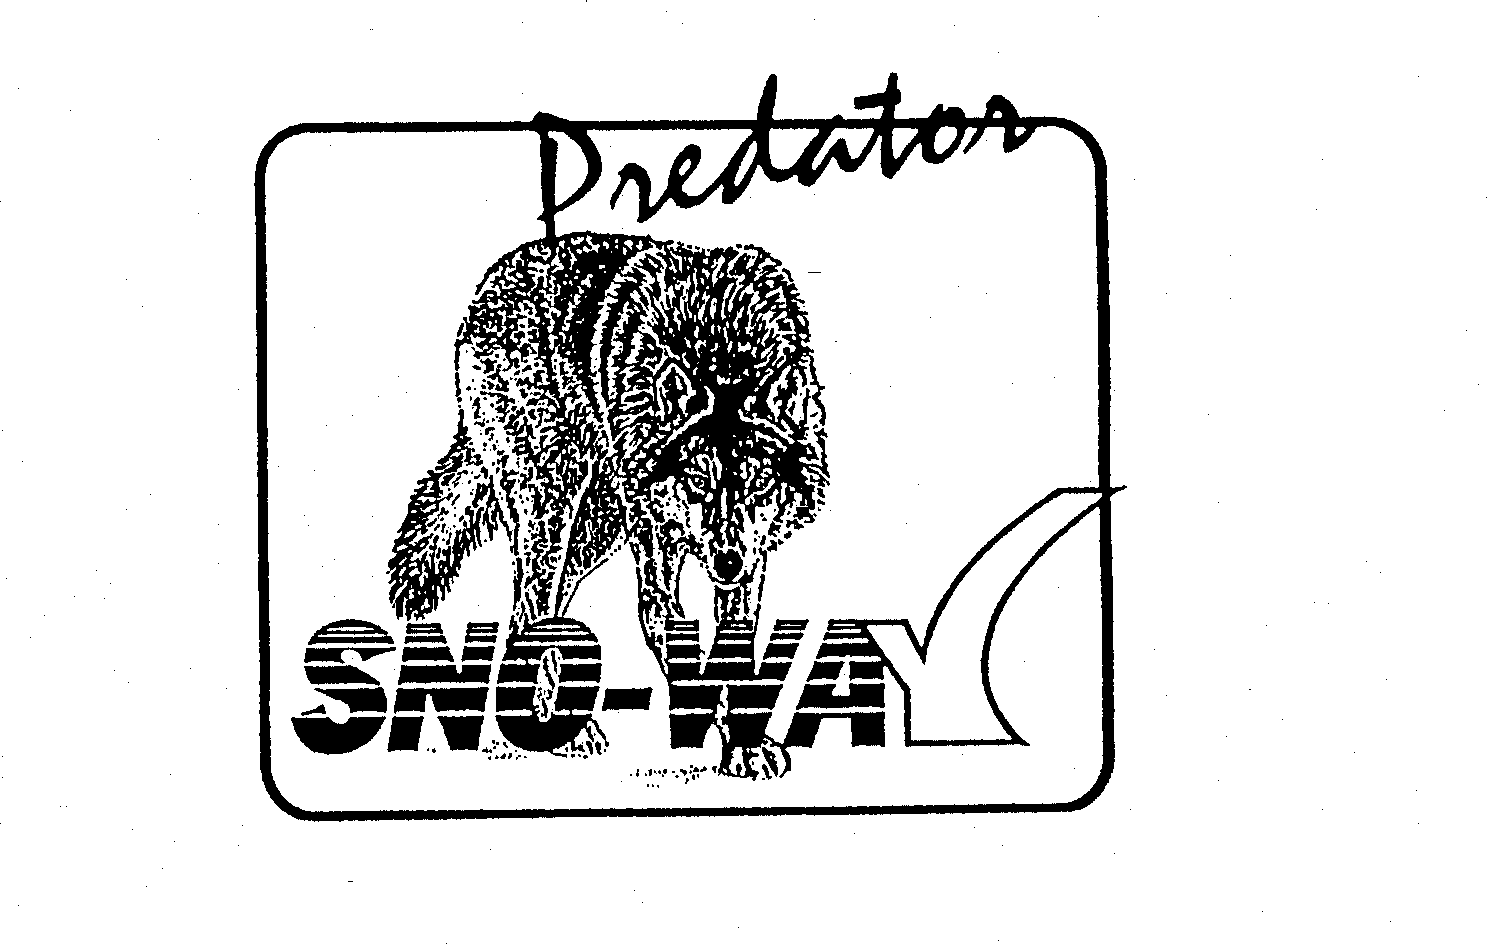  PREDATOR SNO-WAY